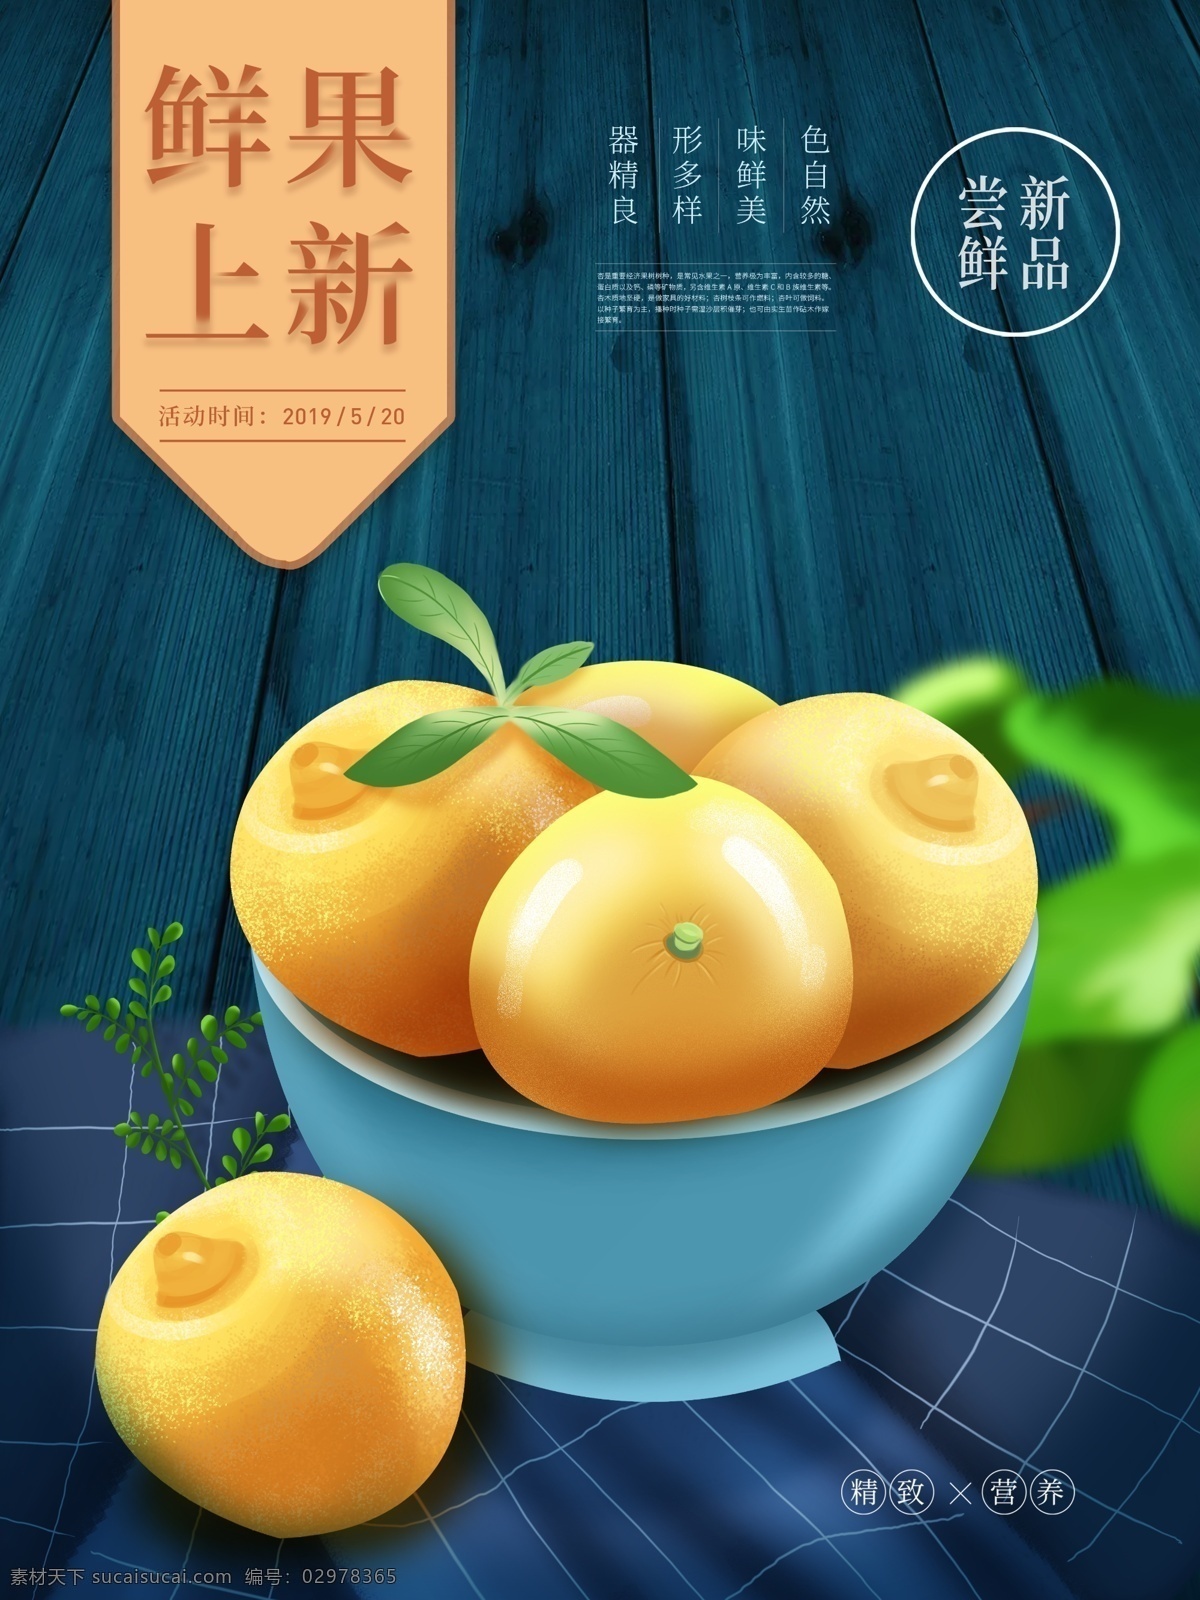 原创 插画 水果 手绘 美食 海报 原创插画 新品上市 柠檬 小清新 文艺 美食主题海报